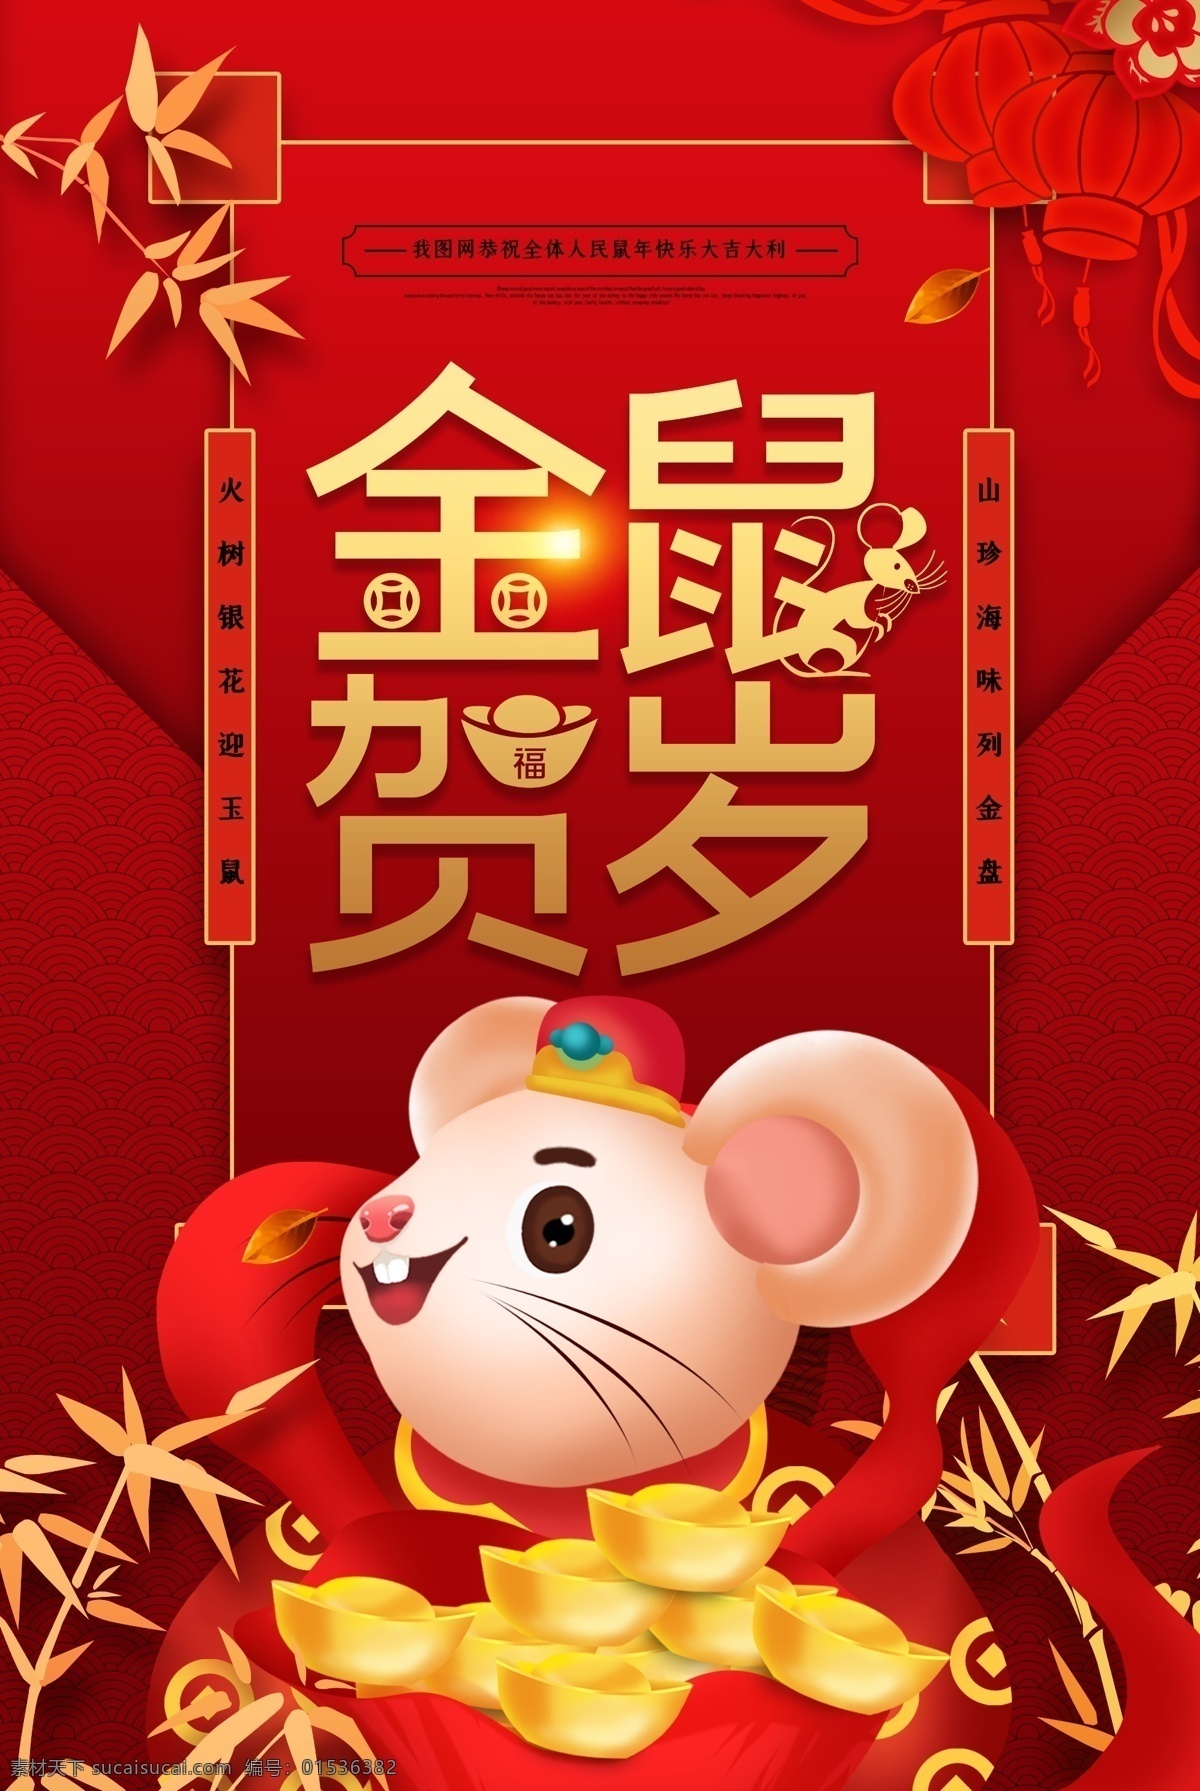 金鼠贺岁 2020 鼠年 新年 新春 春节 鼠年旺旺 鼠年行大运 谨贺新年 梅花 鼠年素材 鼠年活动 海报